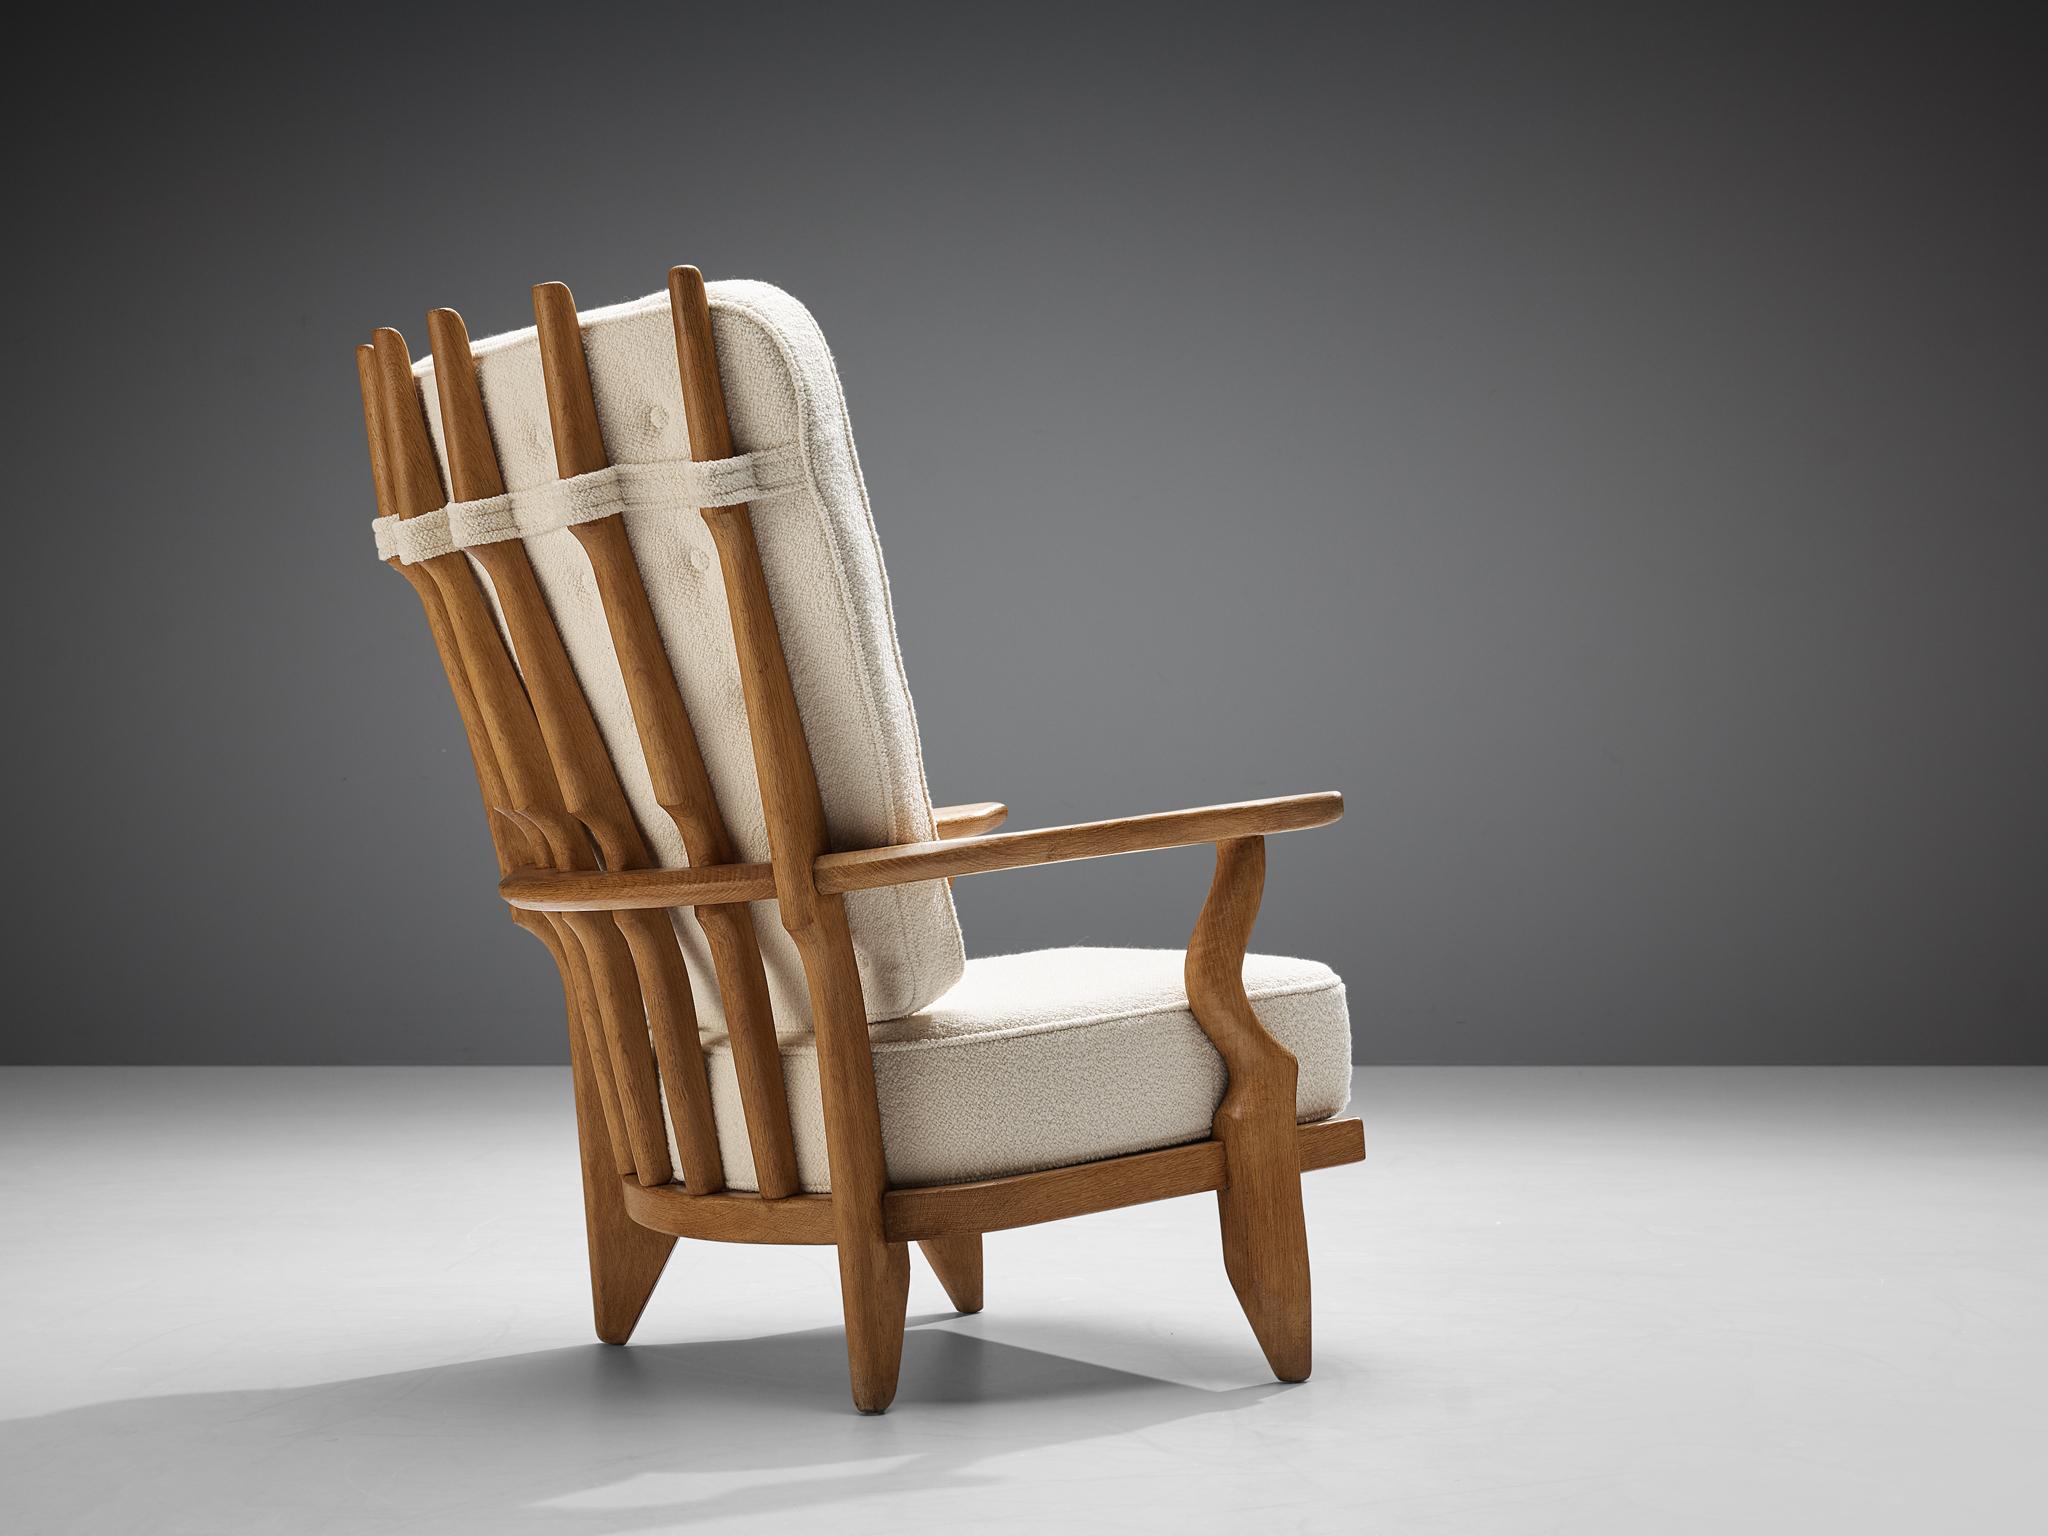 Guillerme et Chambron pour Votre Maison, chaise longue 'Grand Repos' en chêne, tapisserie en laine blanche, chêne, France, années 1960.

Guillerme et Chambron sont connus pour leurs meubles en chêne massif de haute qualité, dont celui-ci est un